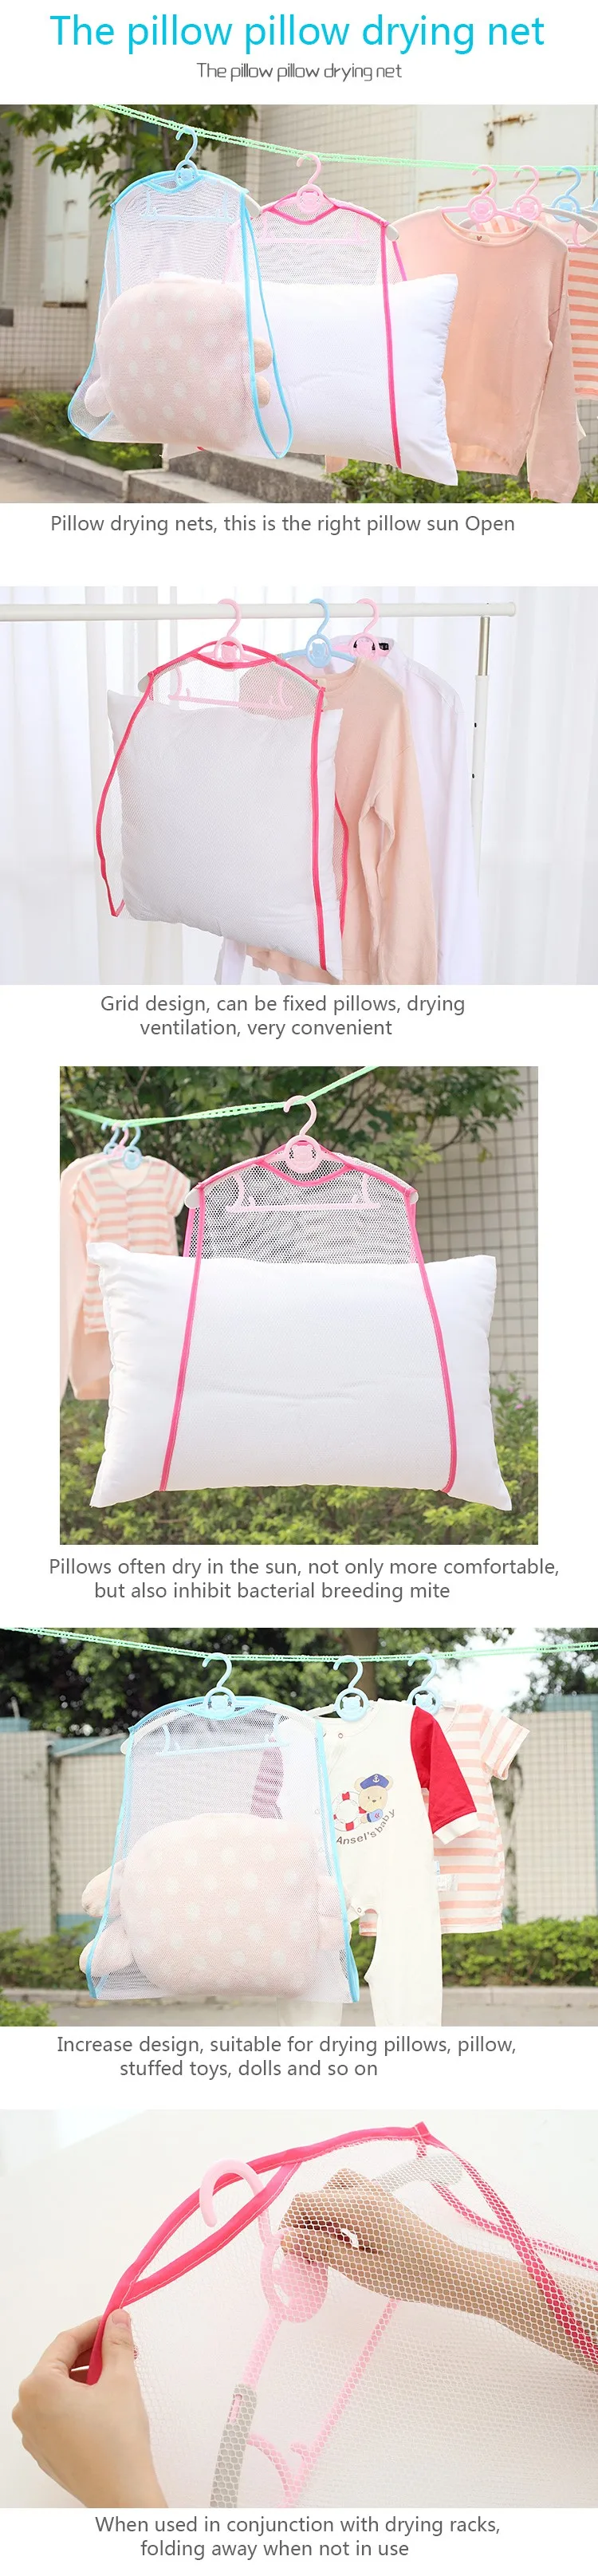 Сушильная сетка ветрозащитная сушилка мелкая сетка принт многофункциональная подушка игрушки солнце нижнее белье для сушки подушек сетка вешалка